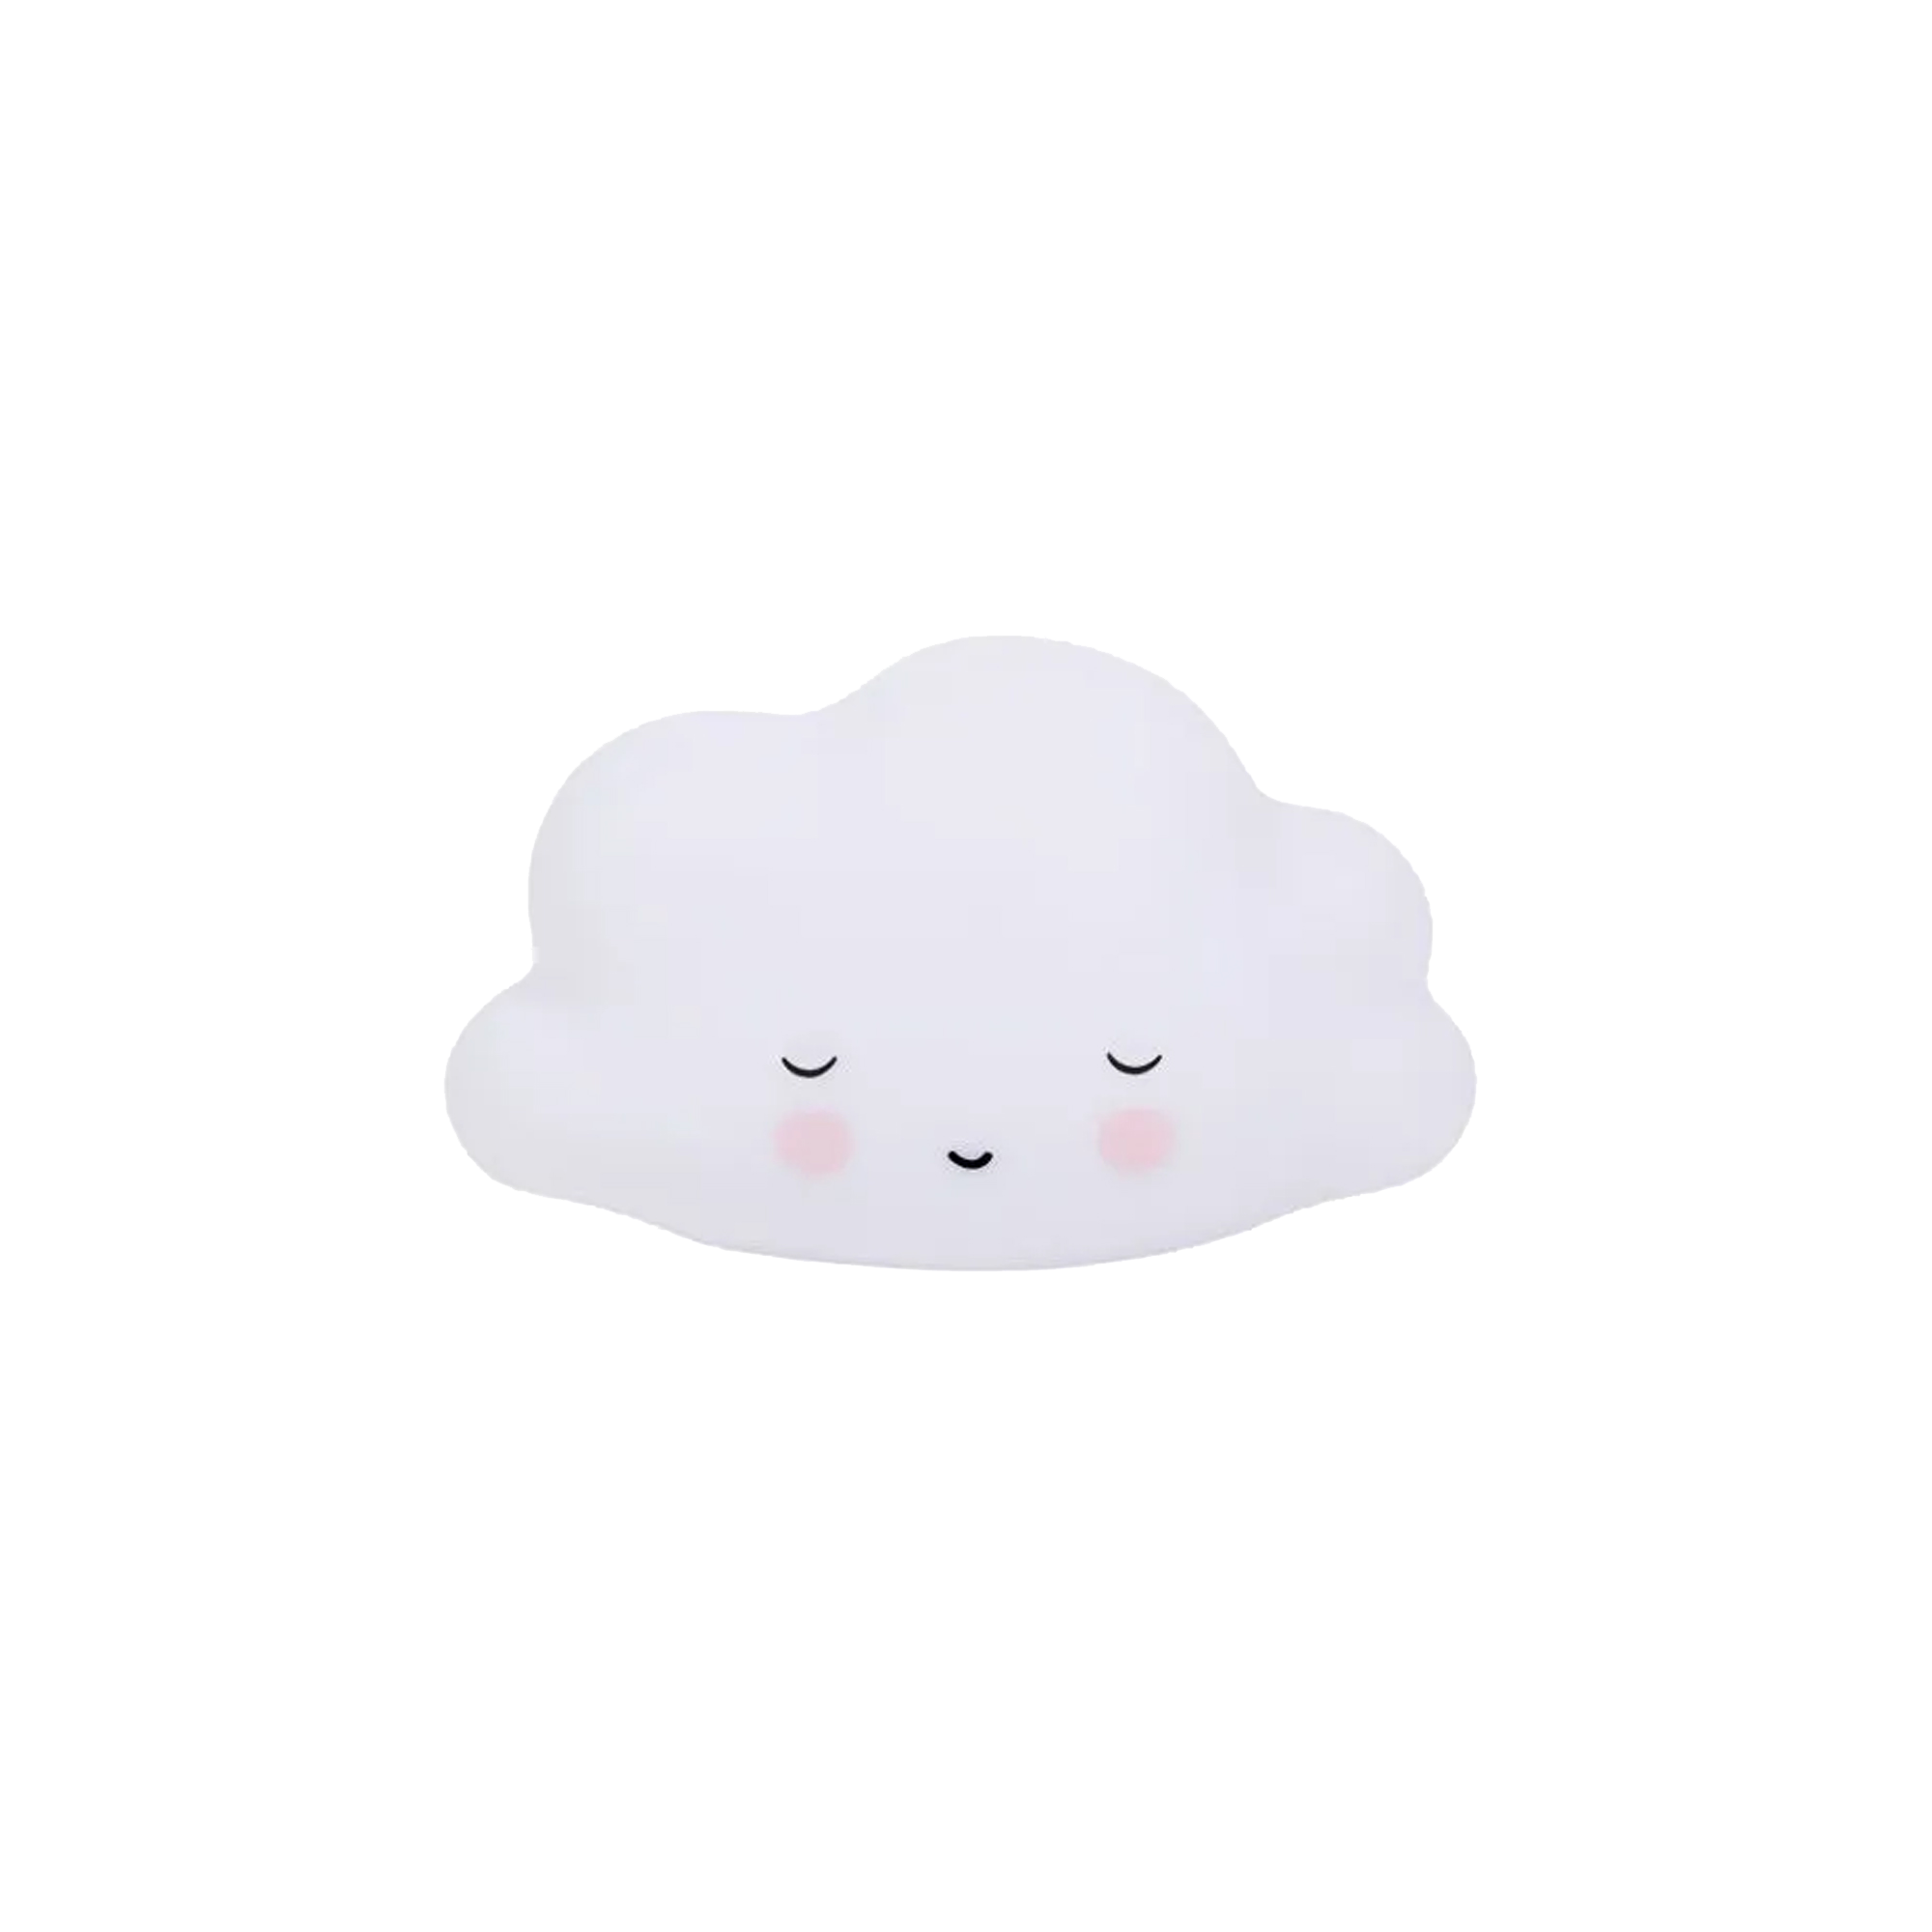 Veilleuse nuage blanc de A little lovely company sur allobébé